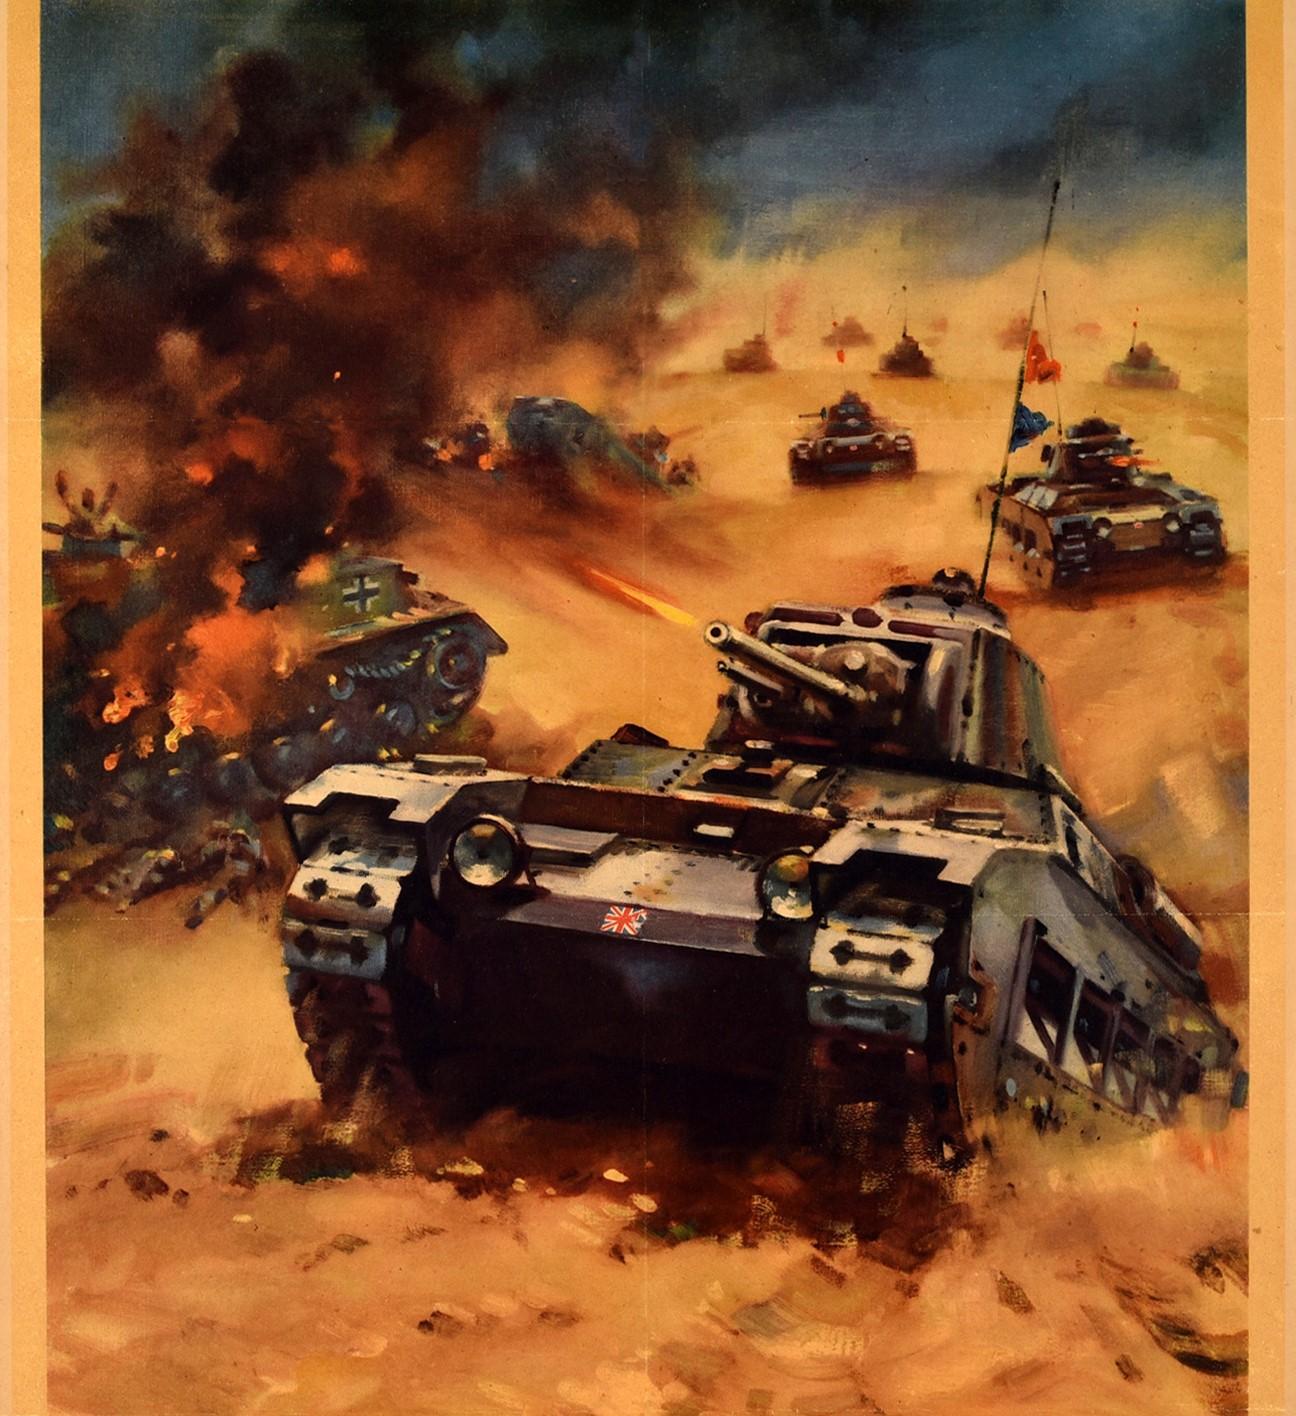 Originales Propagandaposter aus dem Zweiten Weltkrieg - Back them up! Ein britischer Panzerangriff in der westlichen Wüste - mit einer dynamischen Illustration eines Panzers mit britischer Flagge auf der Vorderseite, der einen kleinen sandigen Hügel